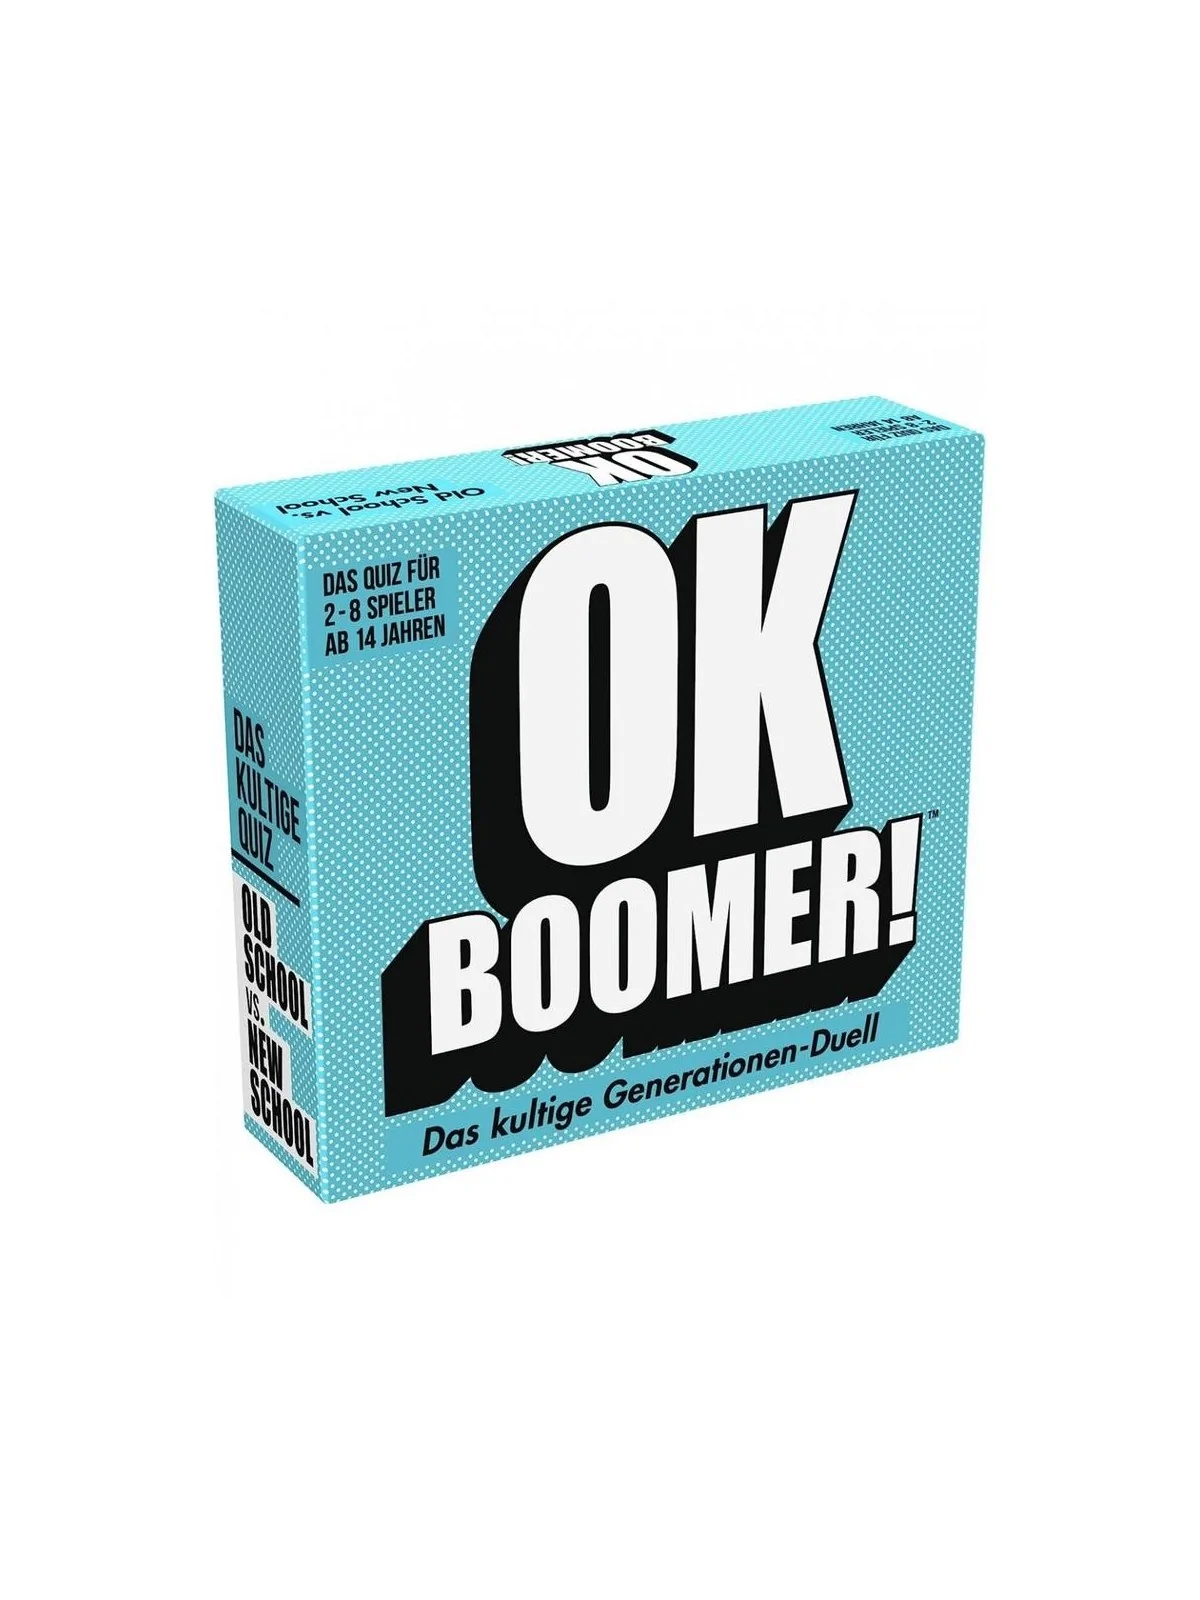 Comprar Ok Boomer barato al mejor precio 16,99 € de Goliath bv